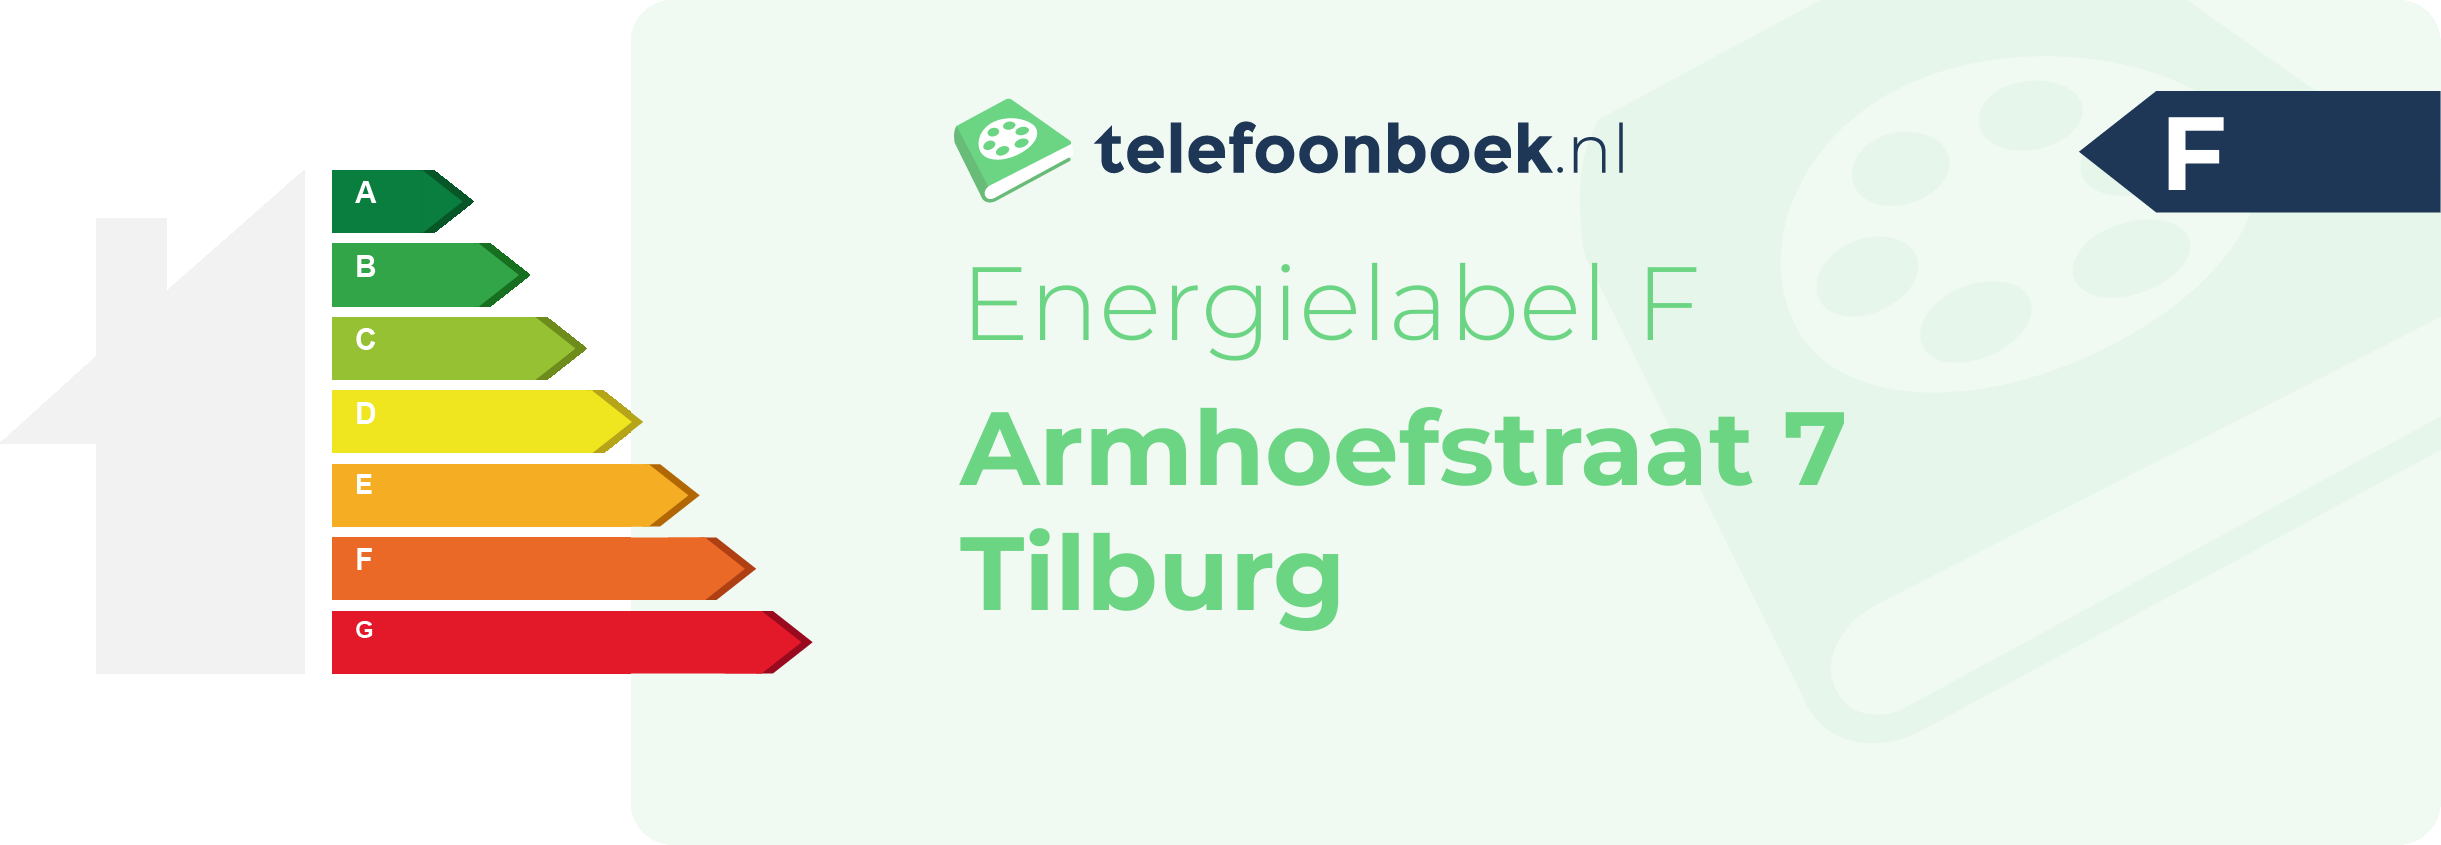 Energielabel Armhoefstraat 7 Tilburg